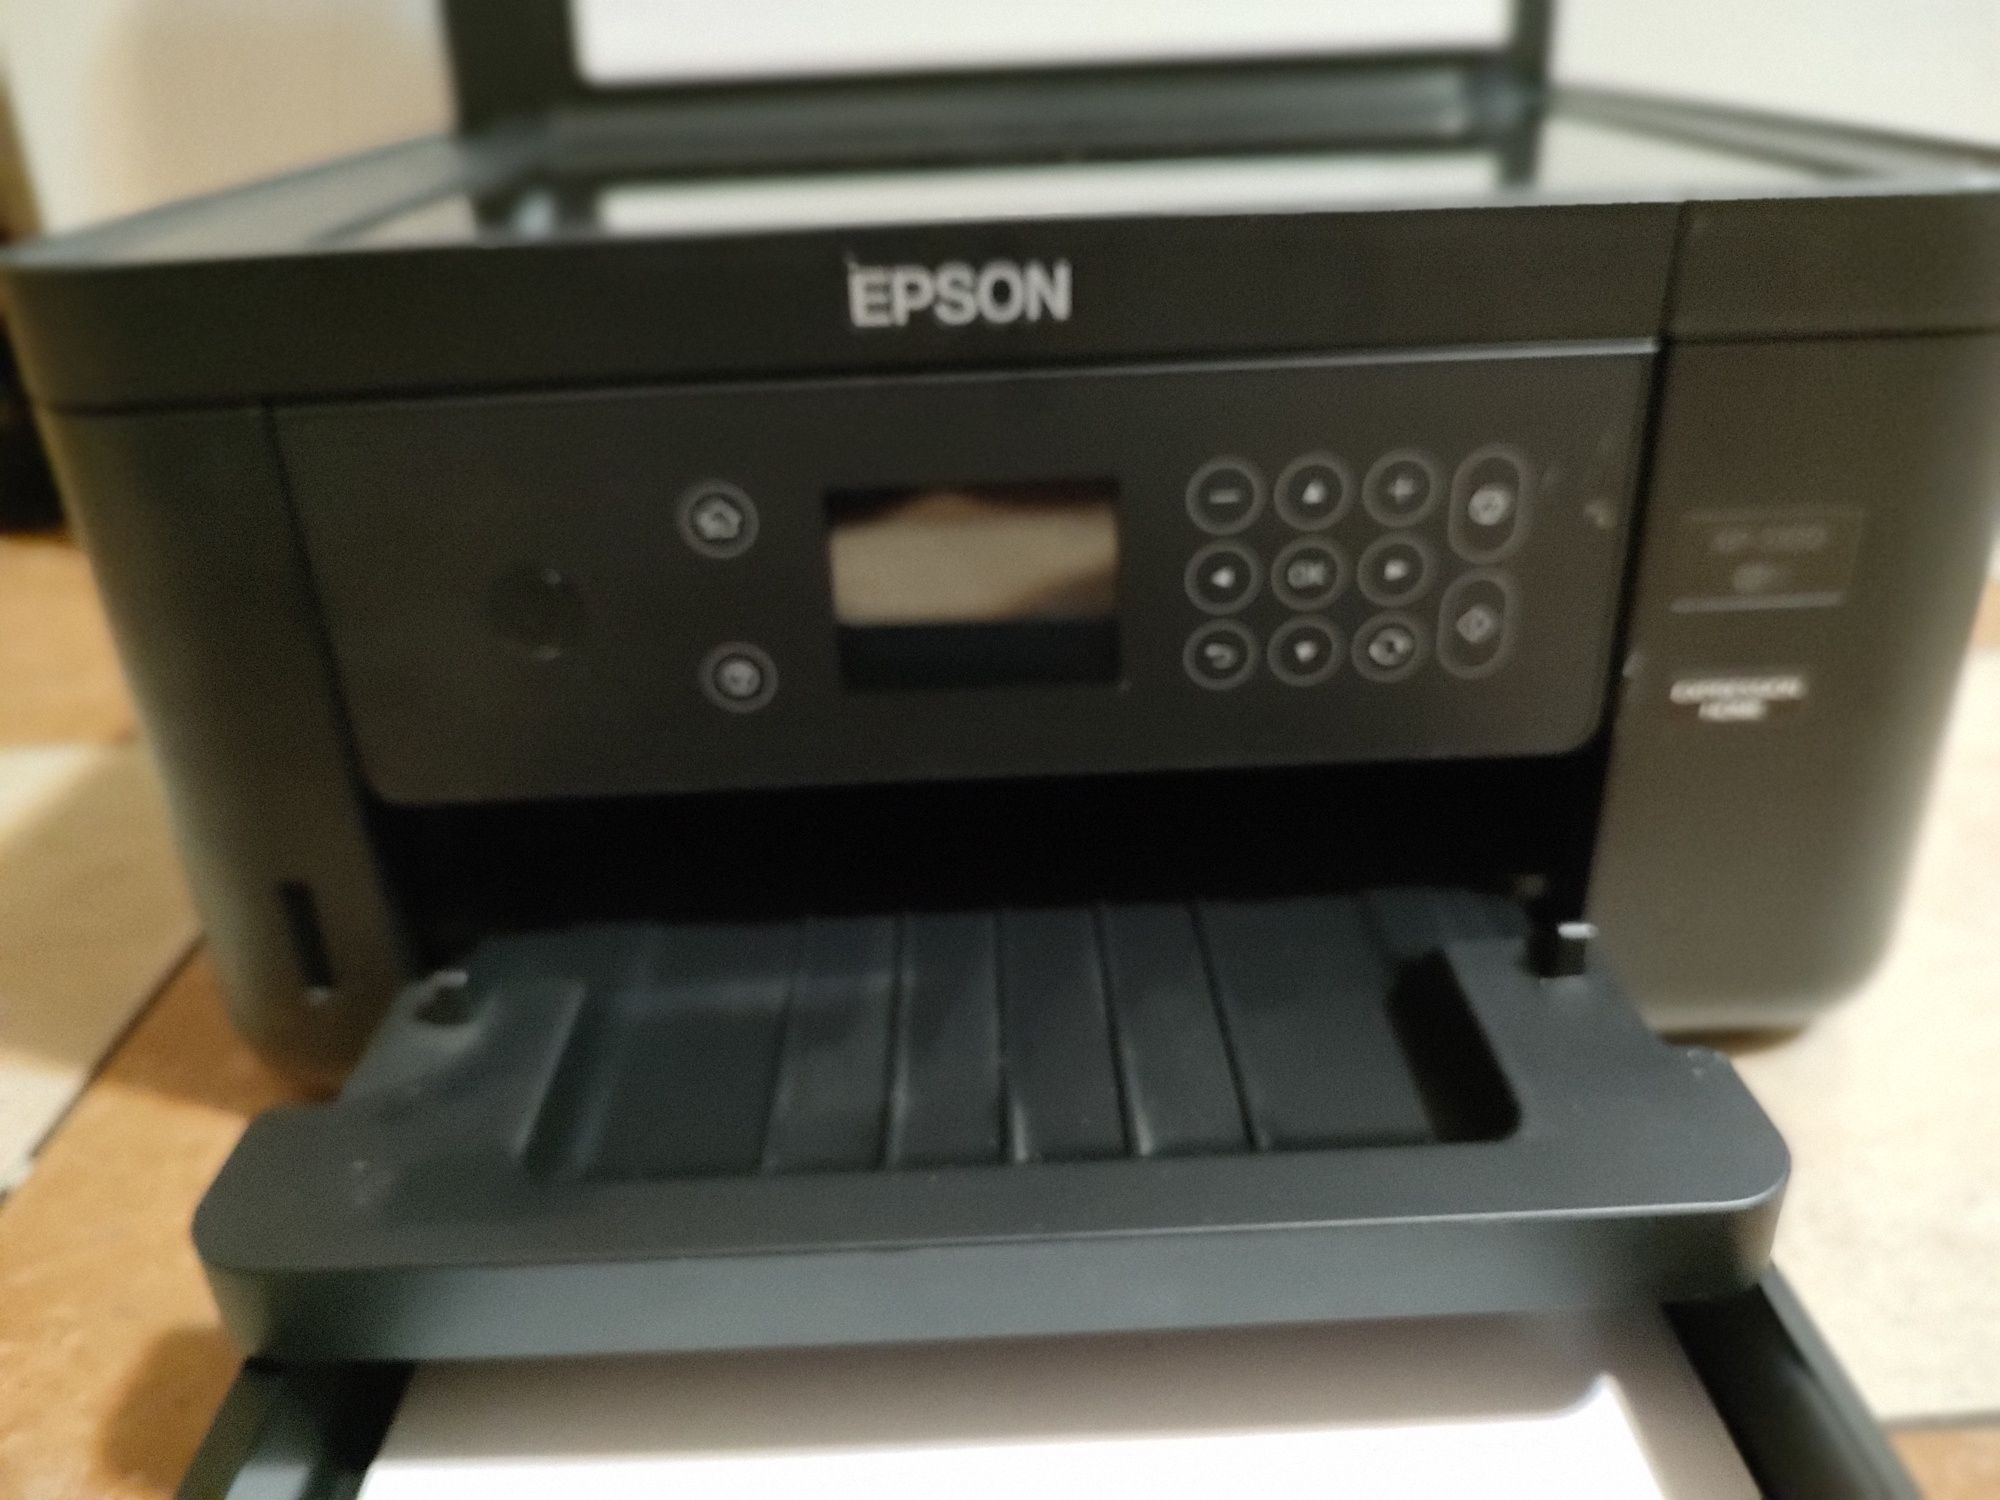 Drukarka Epson 5100 zdjęcia